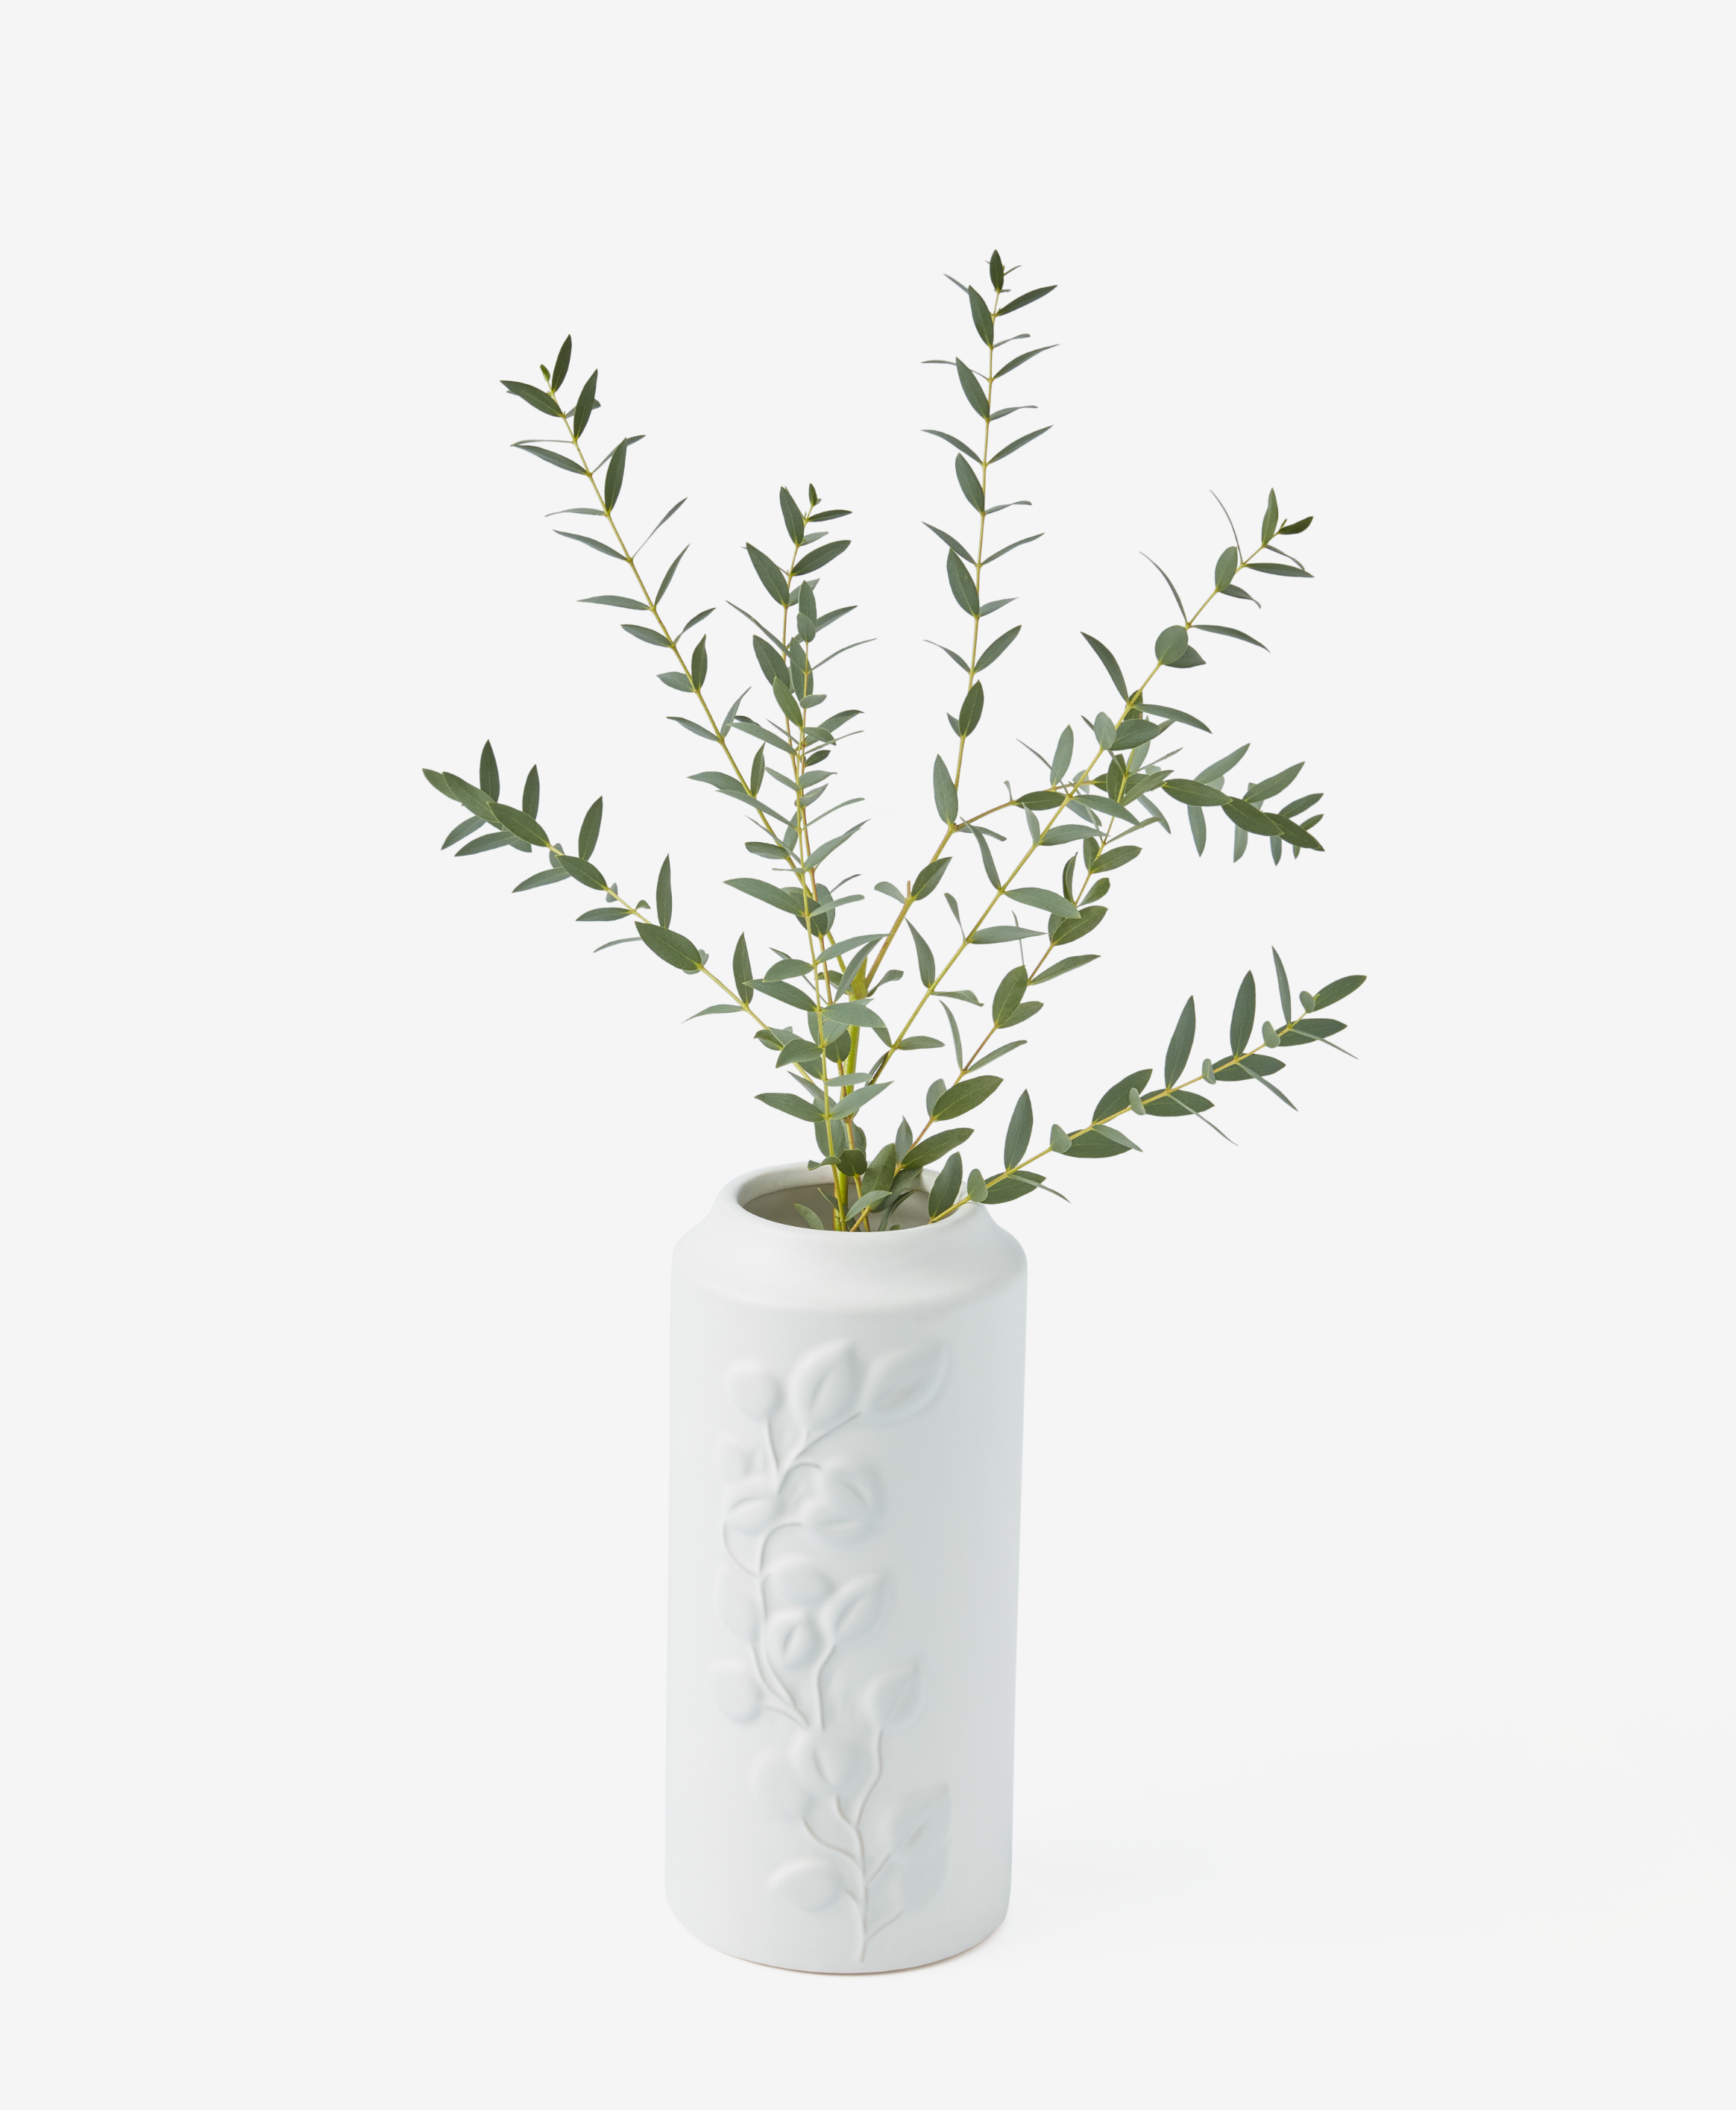 Blumenvase aus Keramik, weiß, 13 x 13 x 26 cm